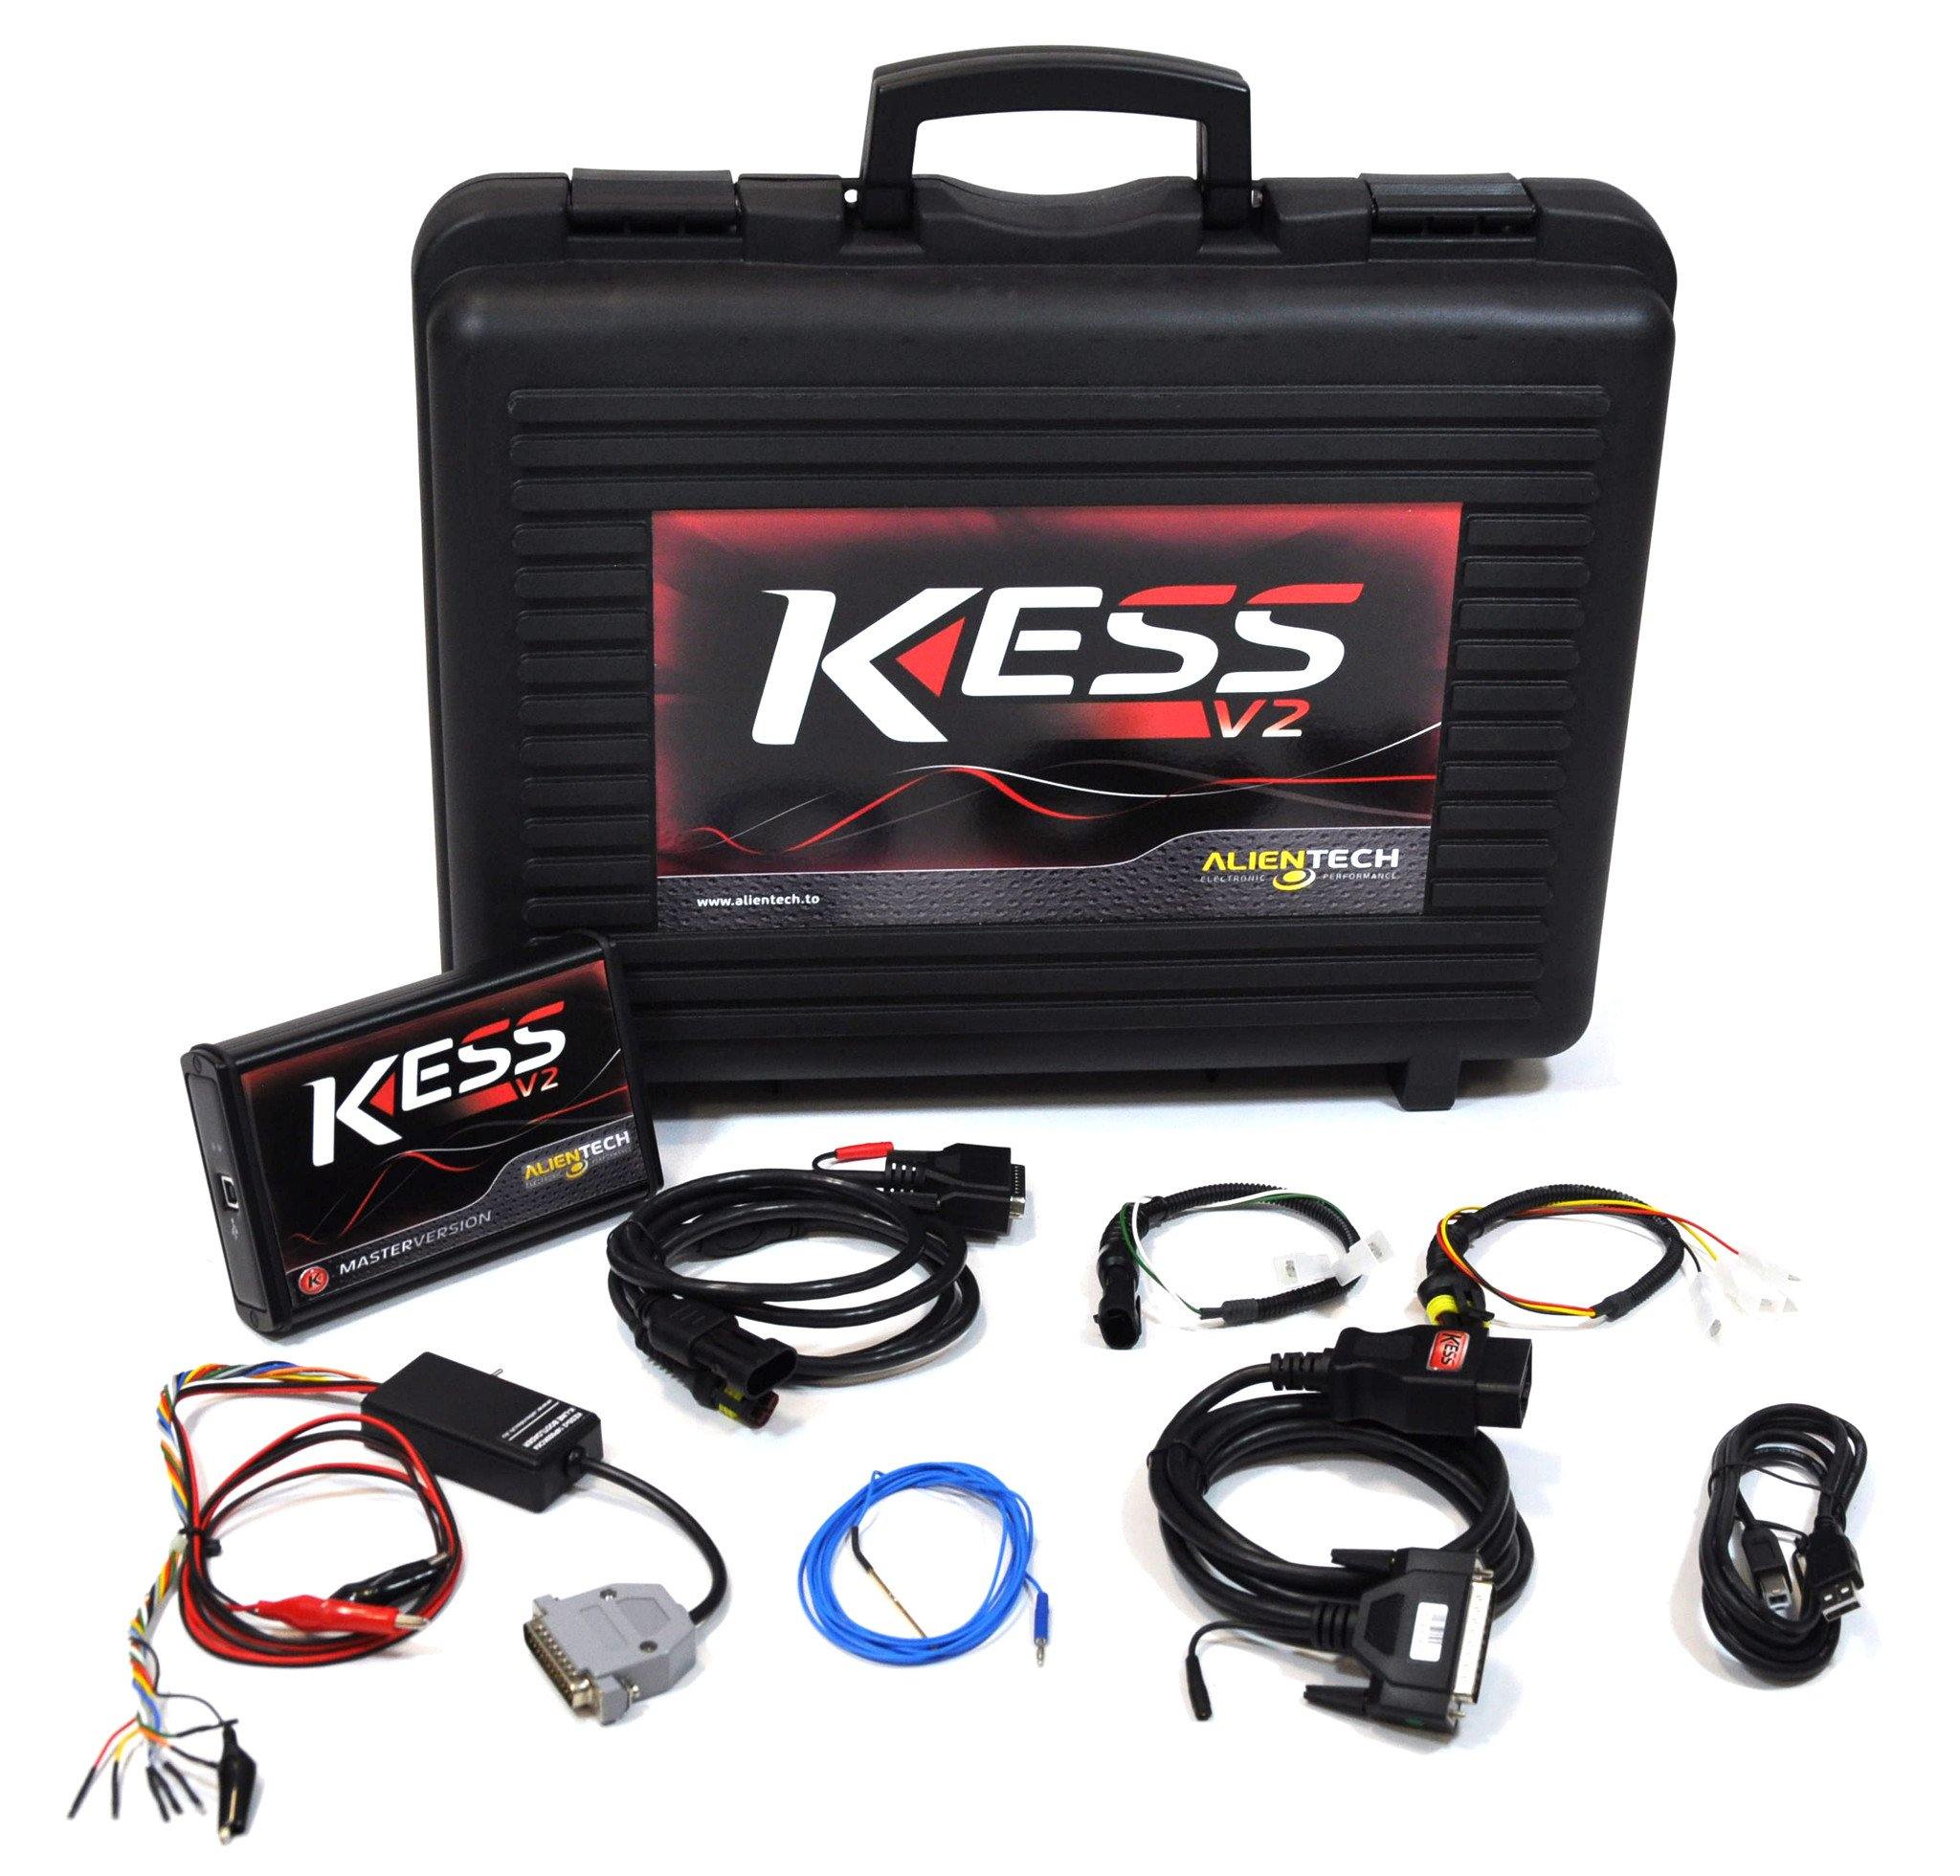 Kess V2 Master Hardware (Tool) – Alientech UK - ALIENTECH AUTHORIZED DEALER